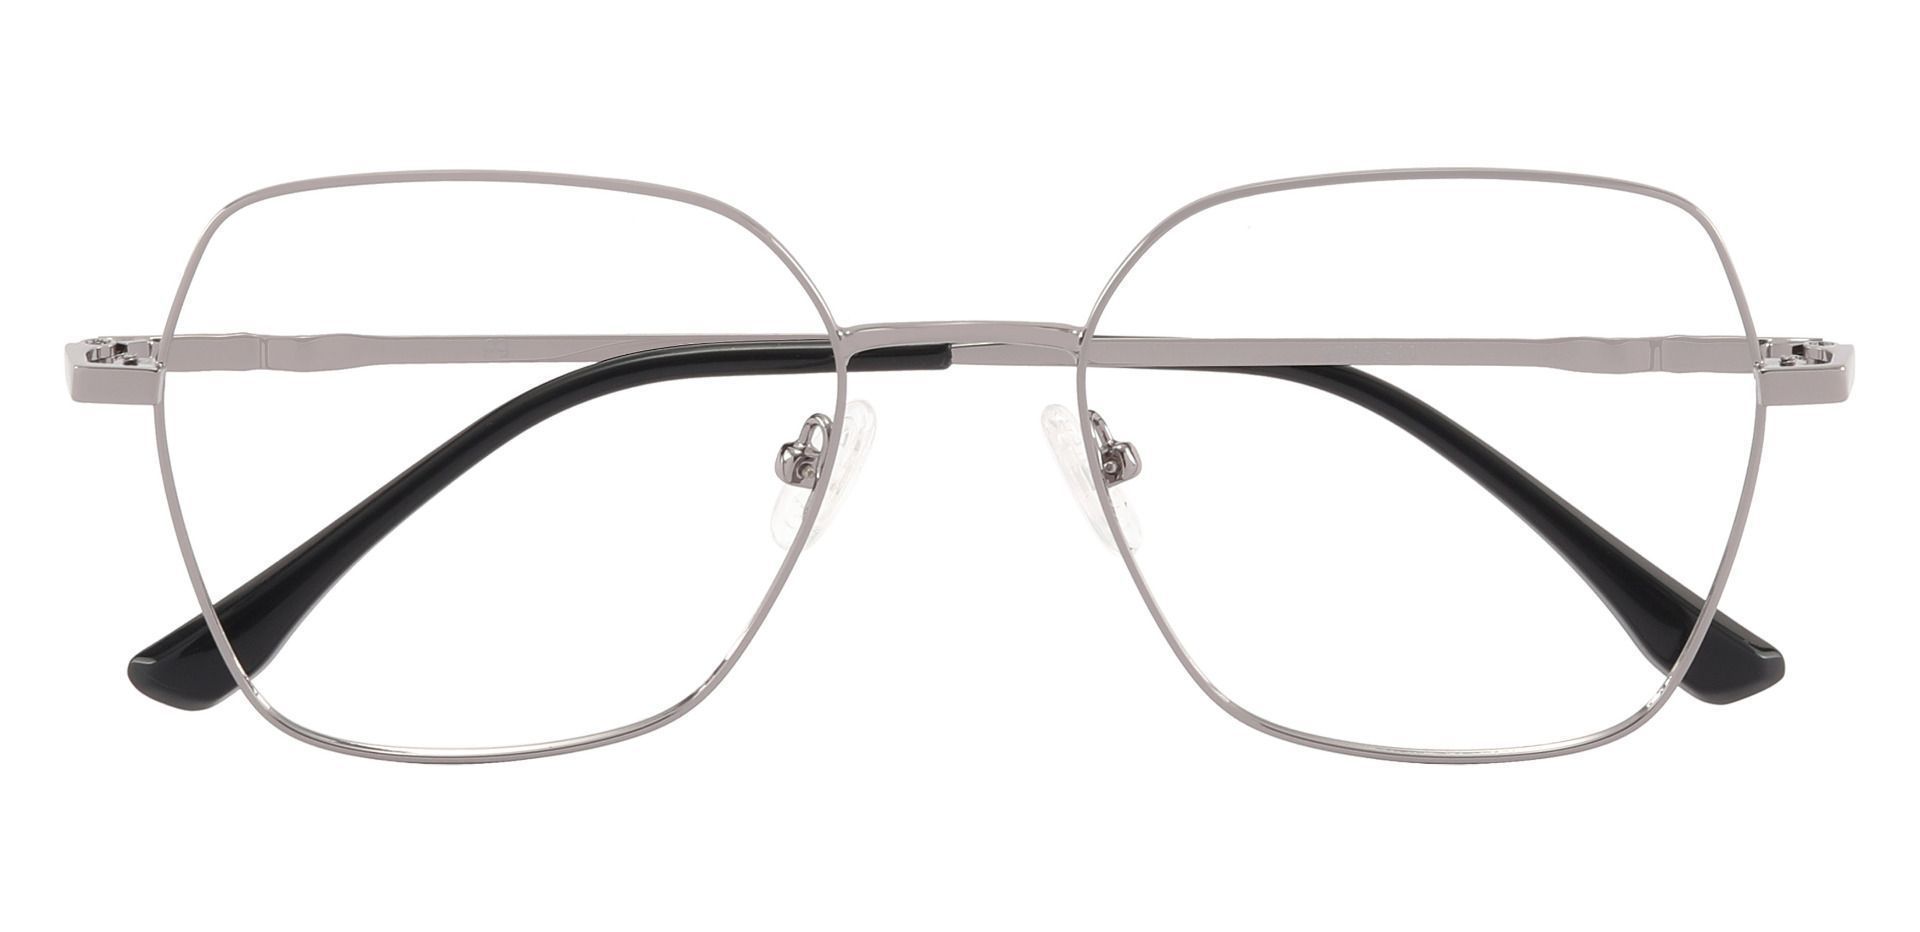 Rocky Geometric Prescription Glasses - Silver